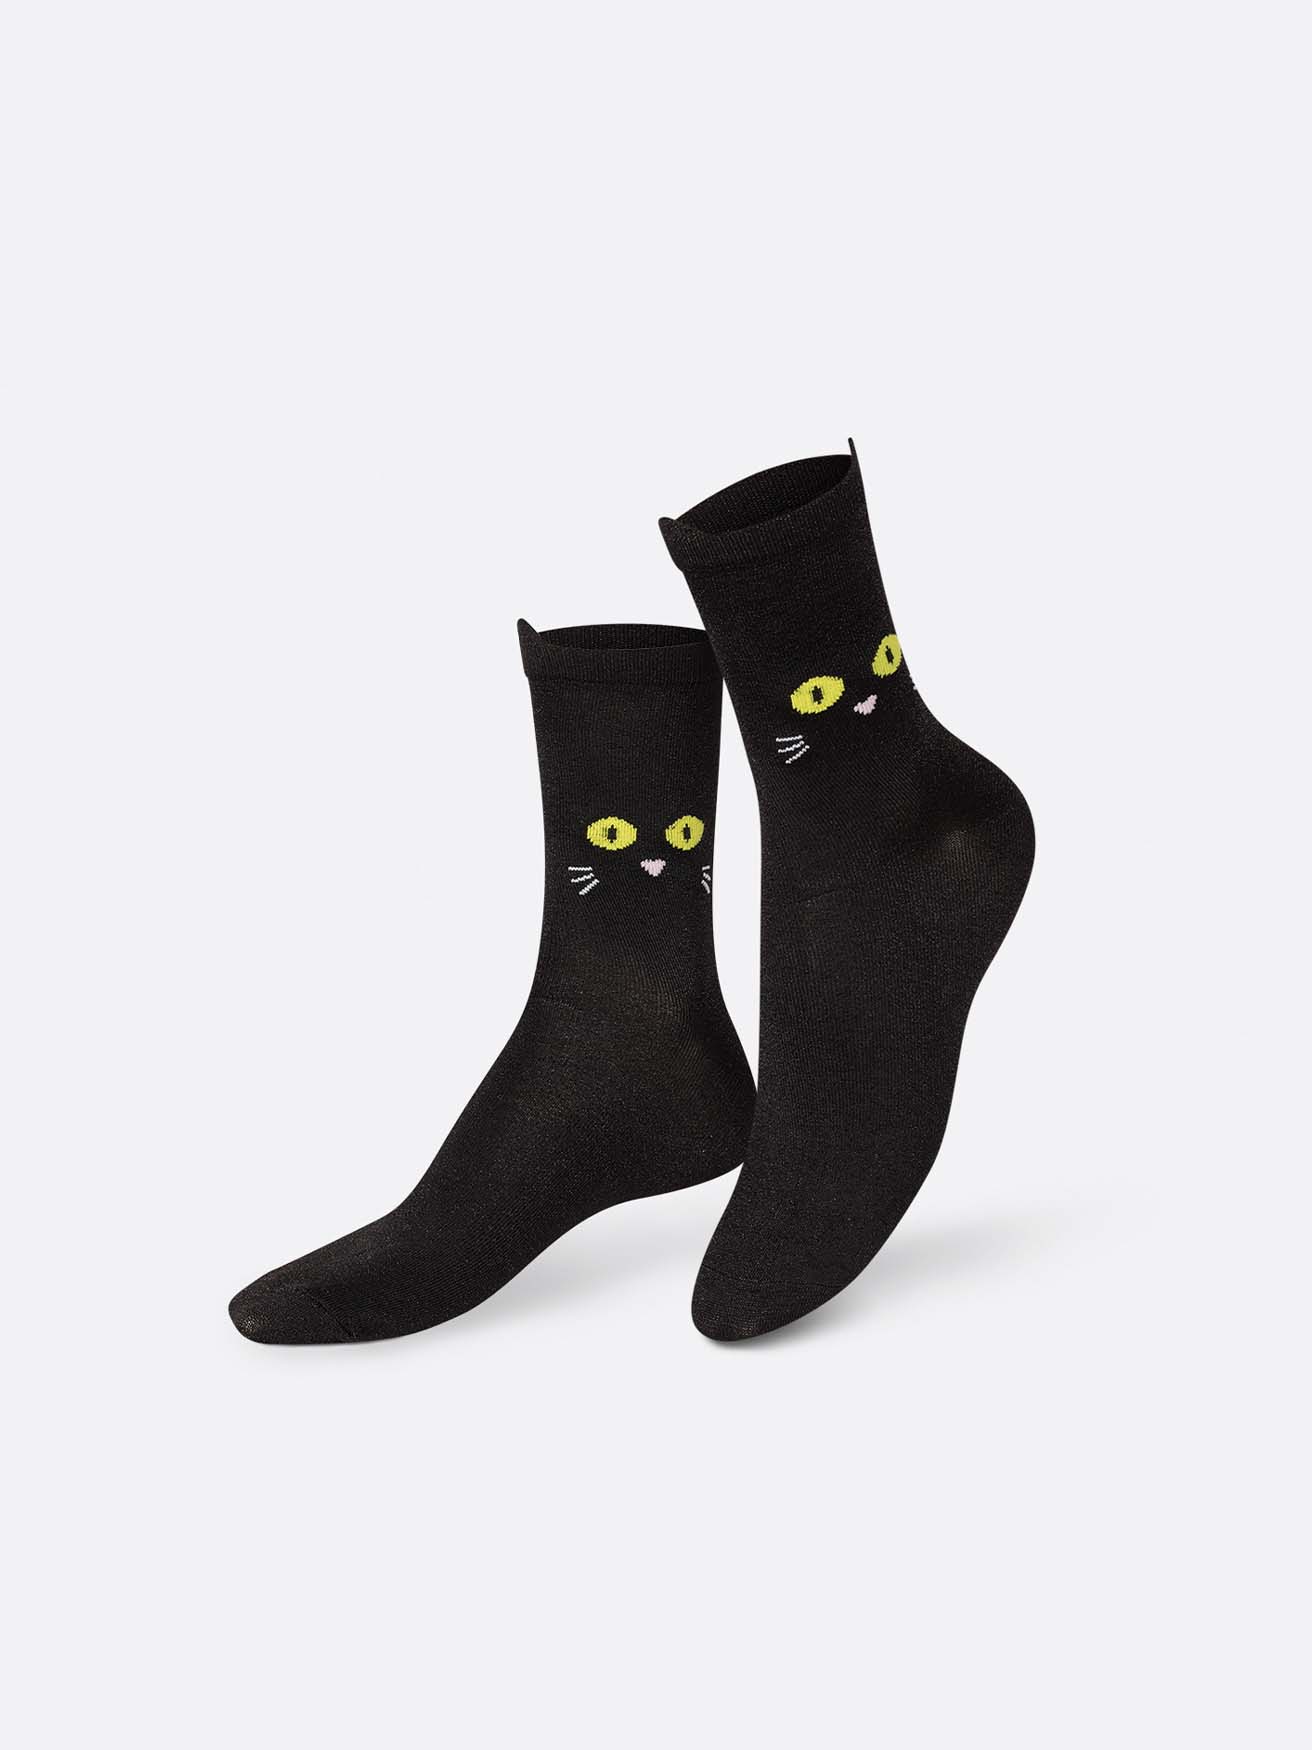 Eat My Socks - Cat Walk